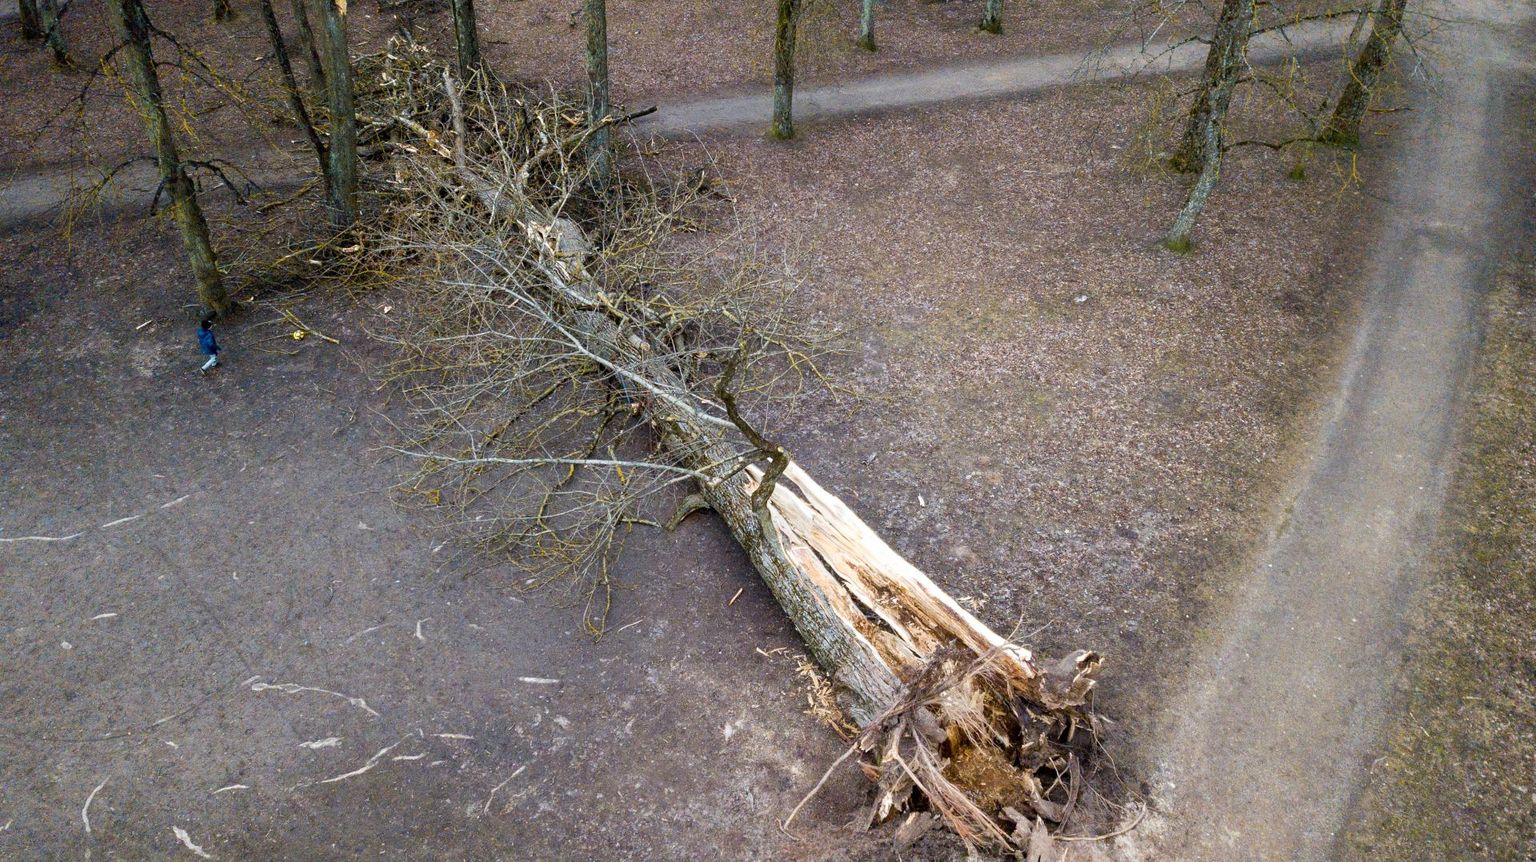 Esmaspäeval sõitis inimene otsa mahakukkunud puule. Foto on illustratiivne.